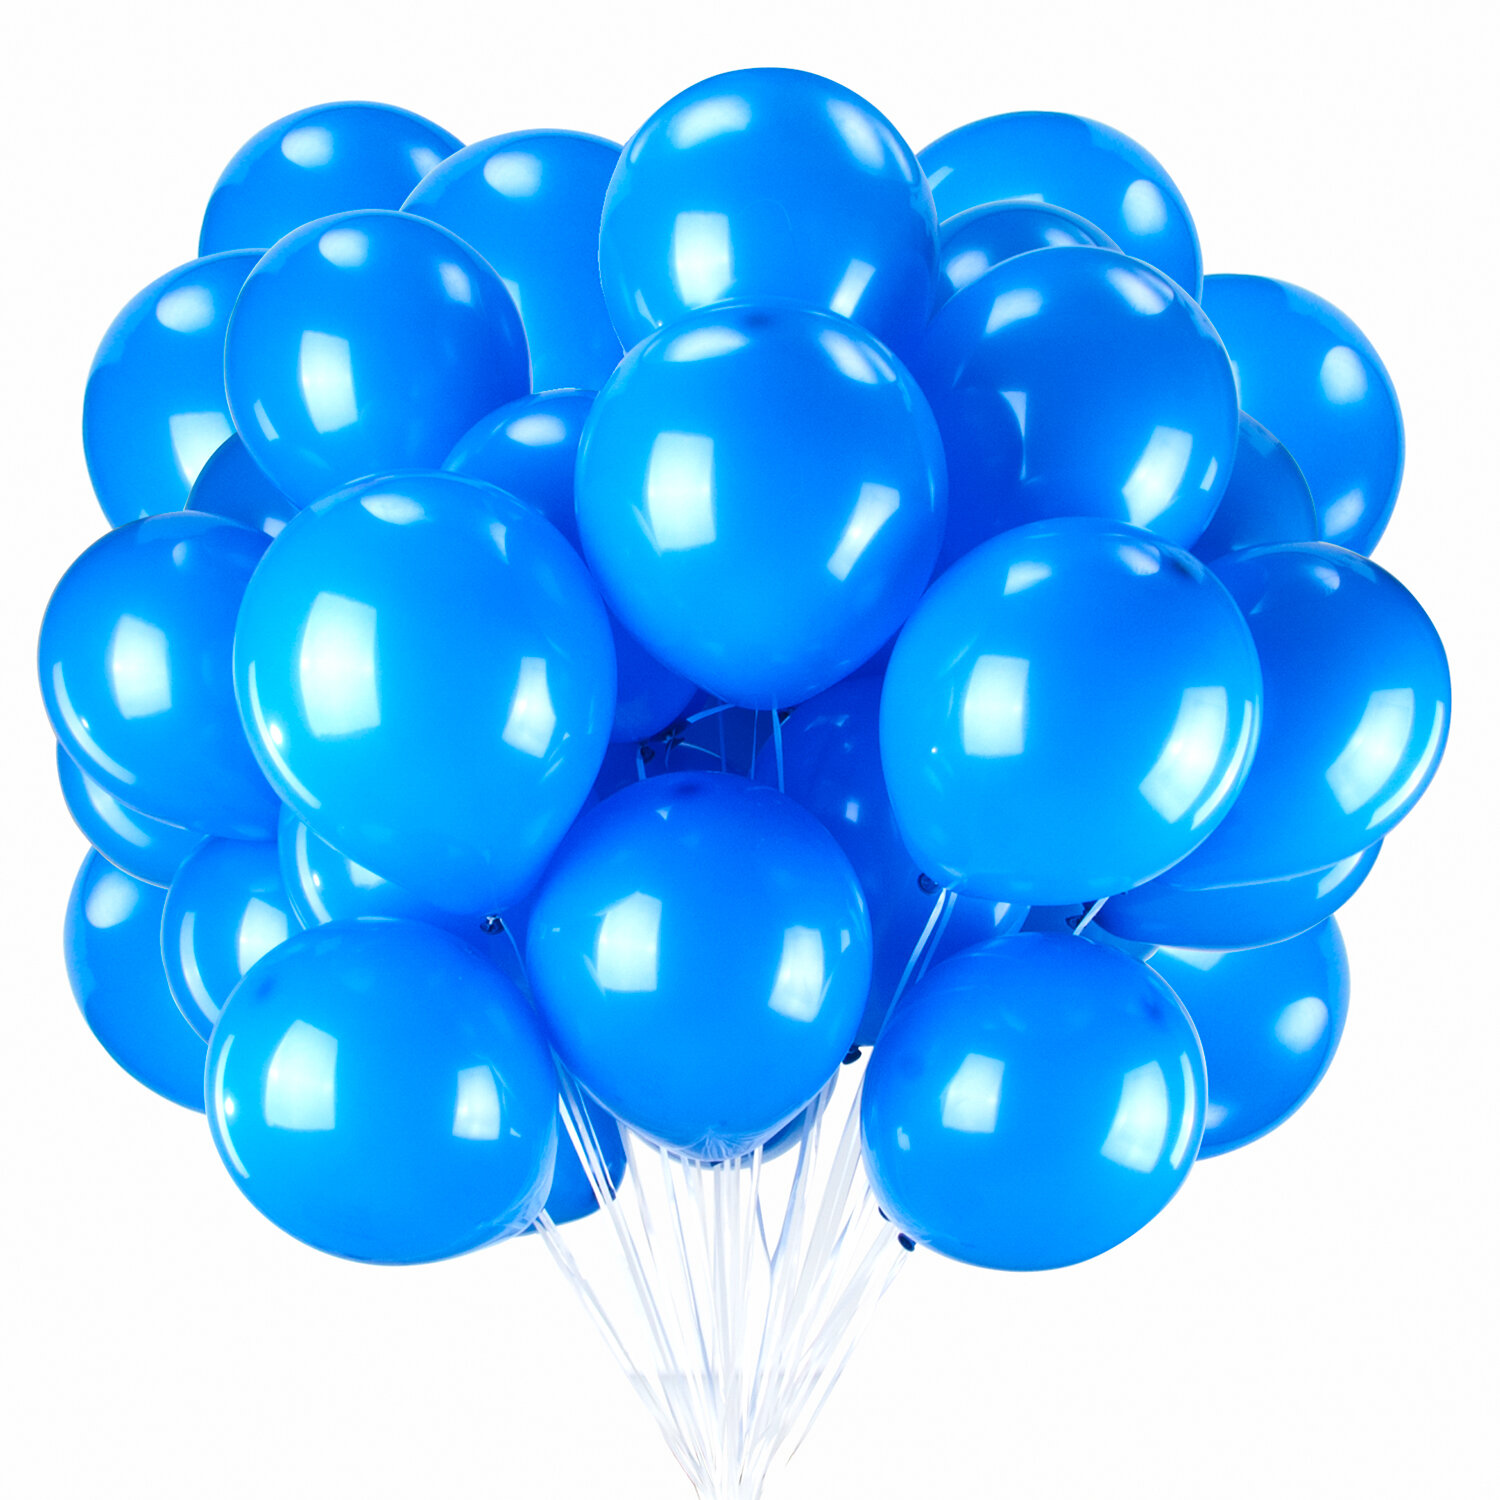 Шары воздушные Золотая Сказка 104999 синие, 25см, 2 упак х 50шт - 100 шаров шары воздушные золотая сказка 105017 разно ные 30см 10 упак х 5шт 50 шаров